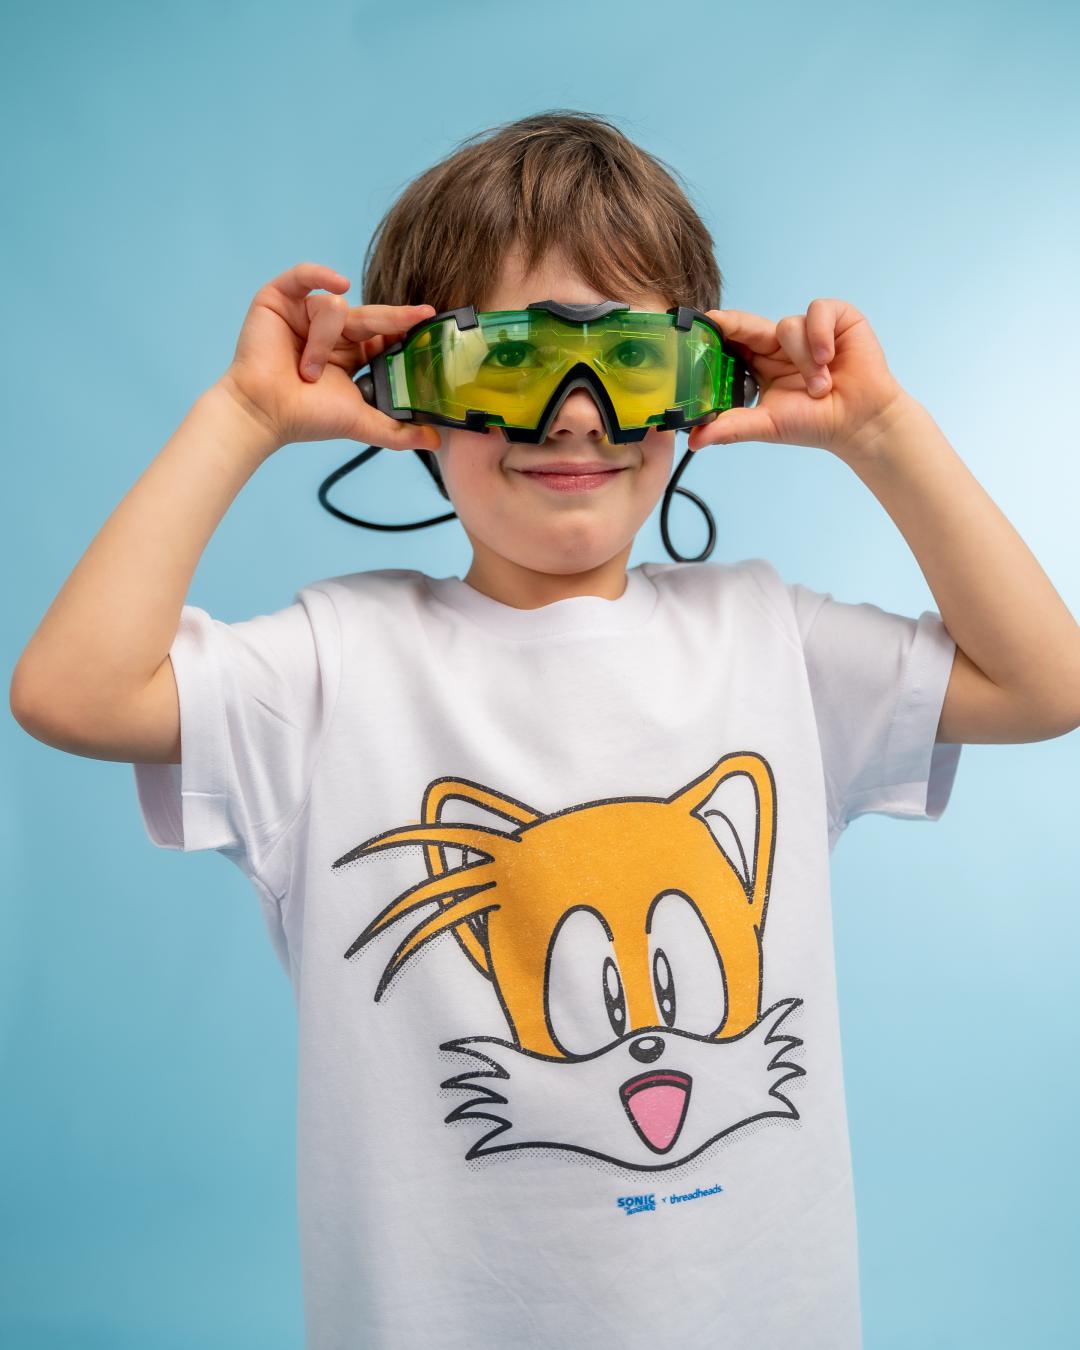 Tails Face Kids T-Shirt Australia Online #colour_white